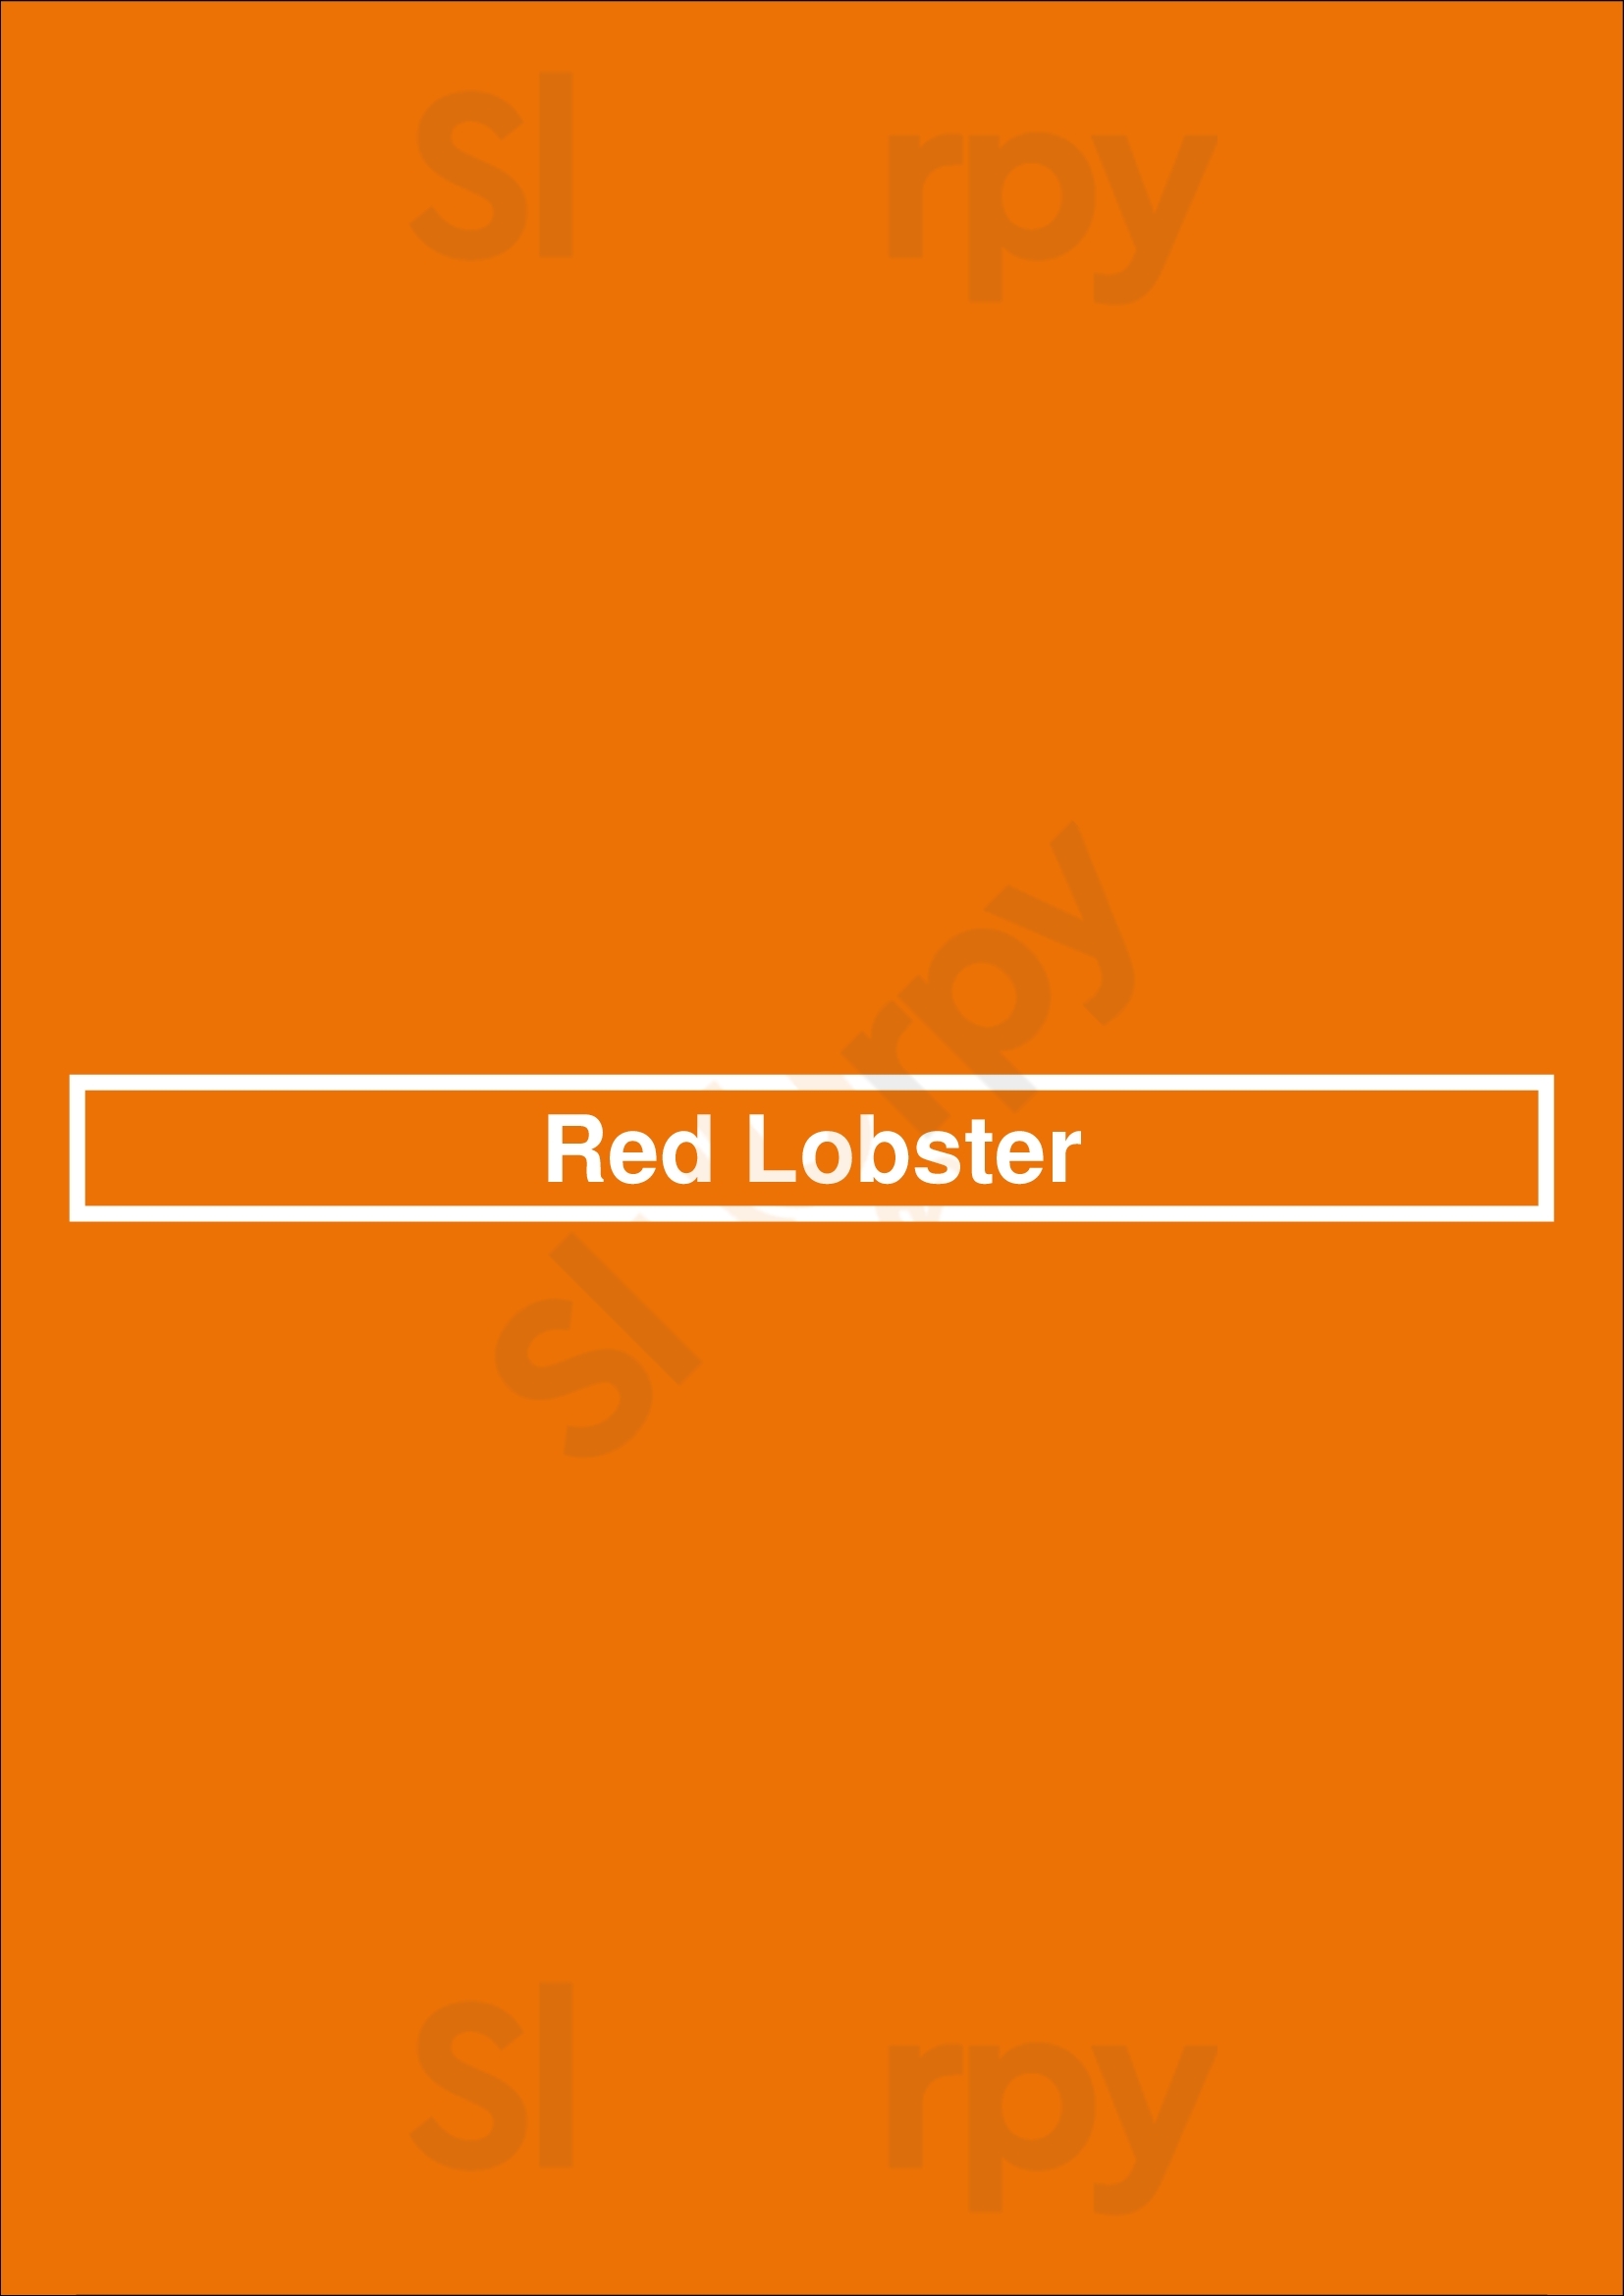 Red Lobster Calgary Menu - 1